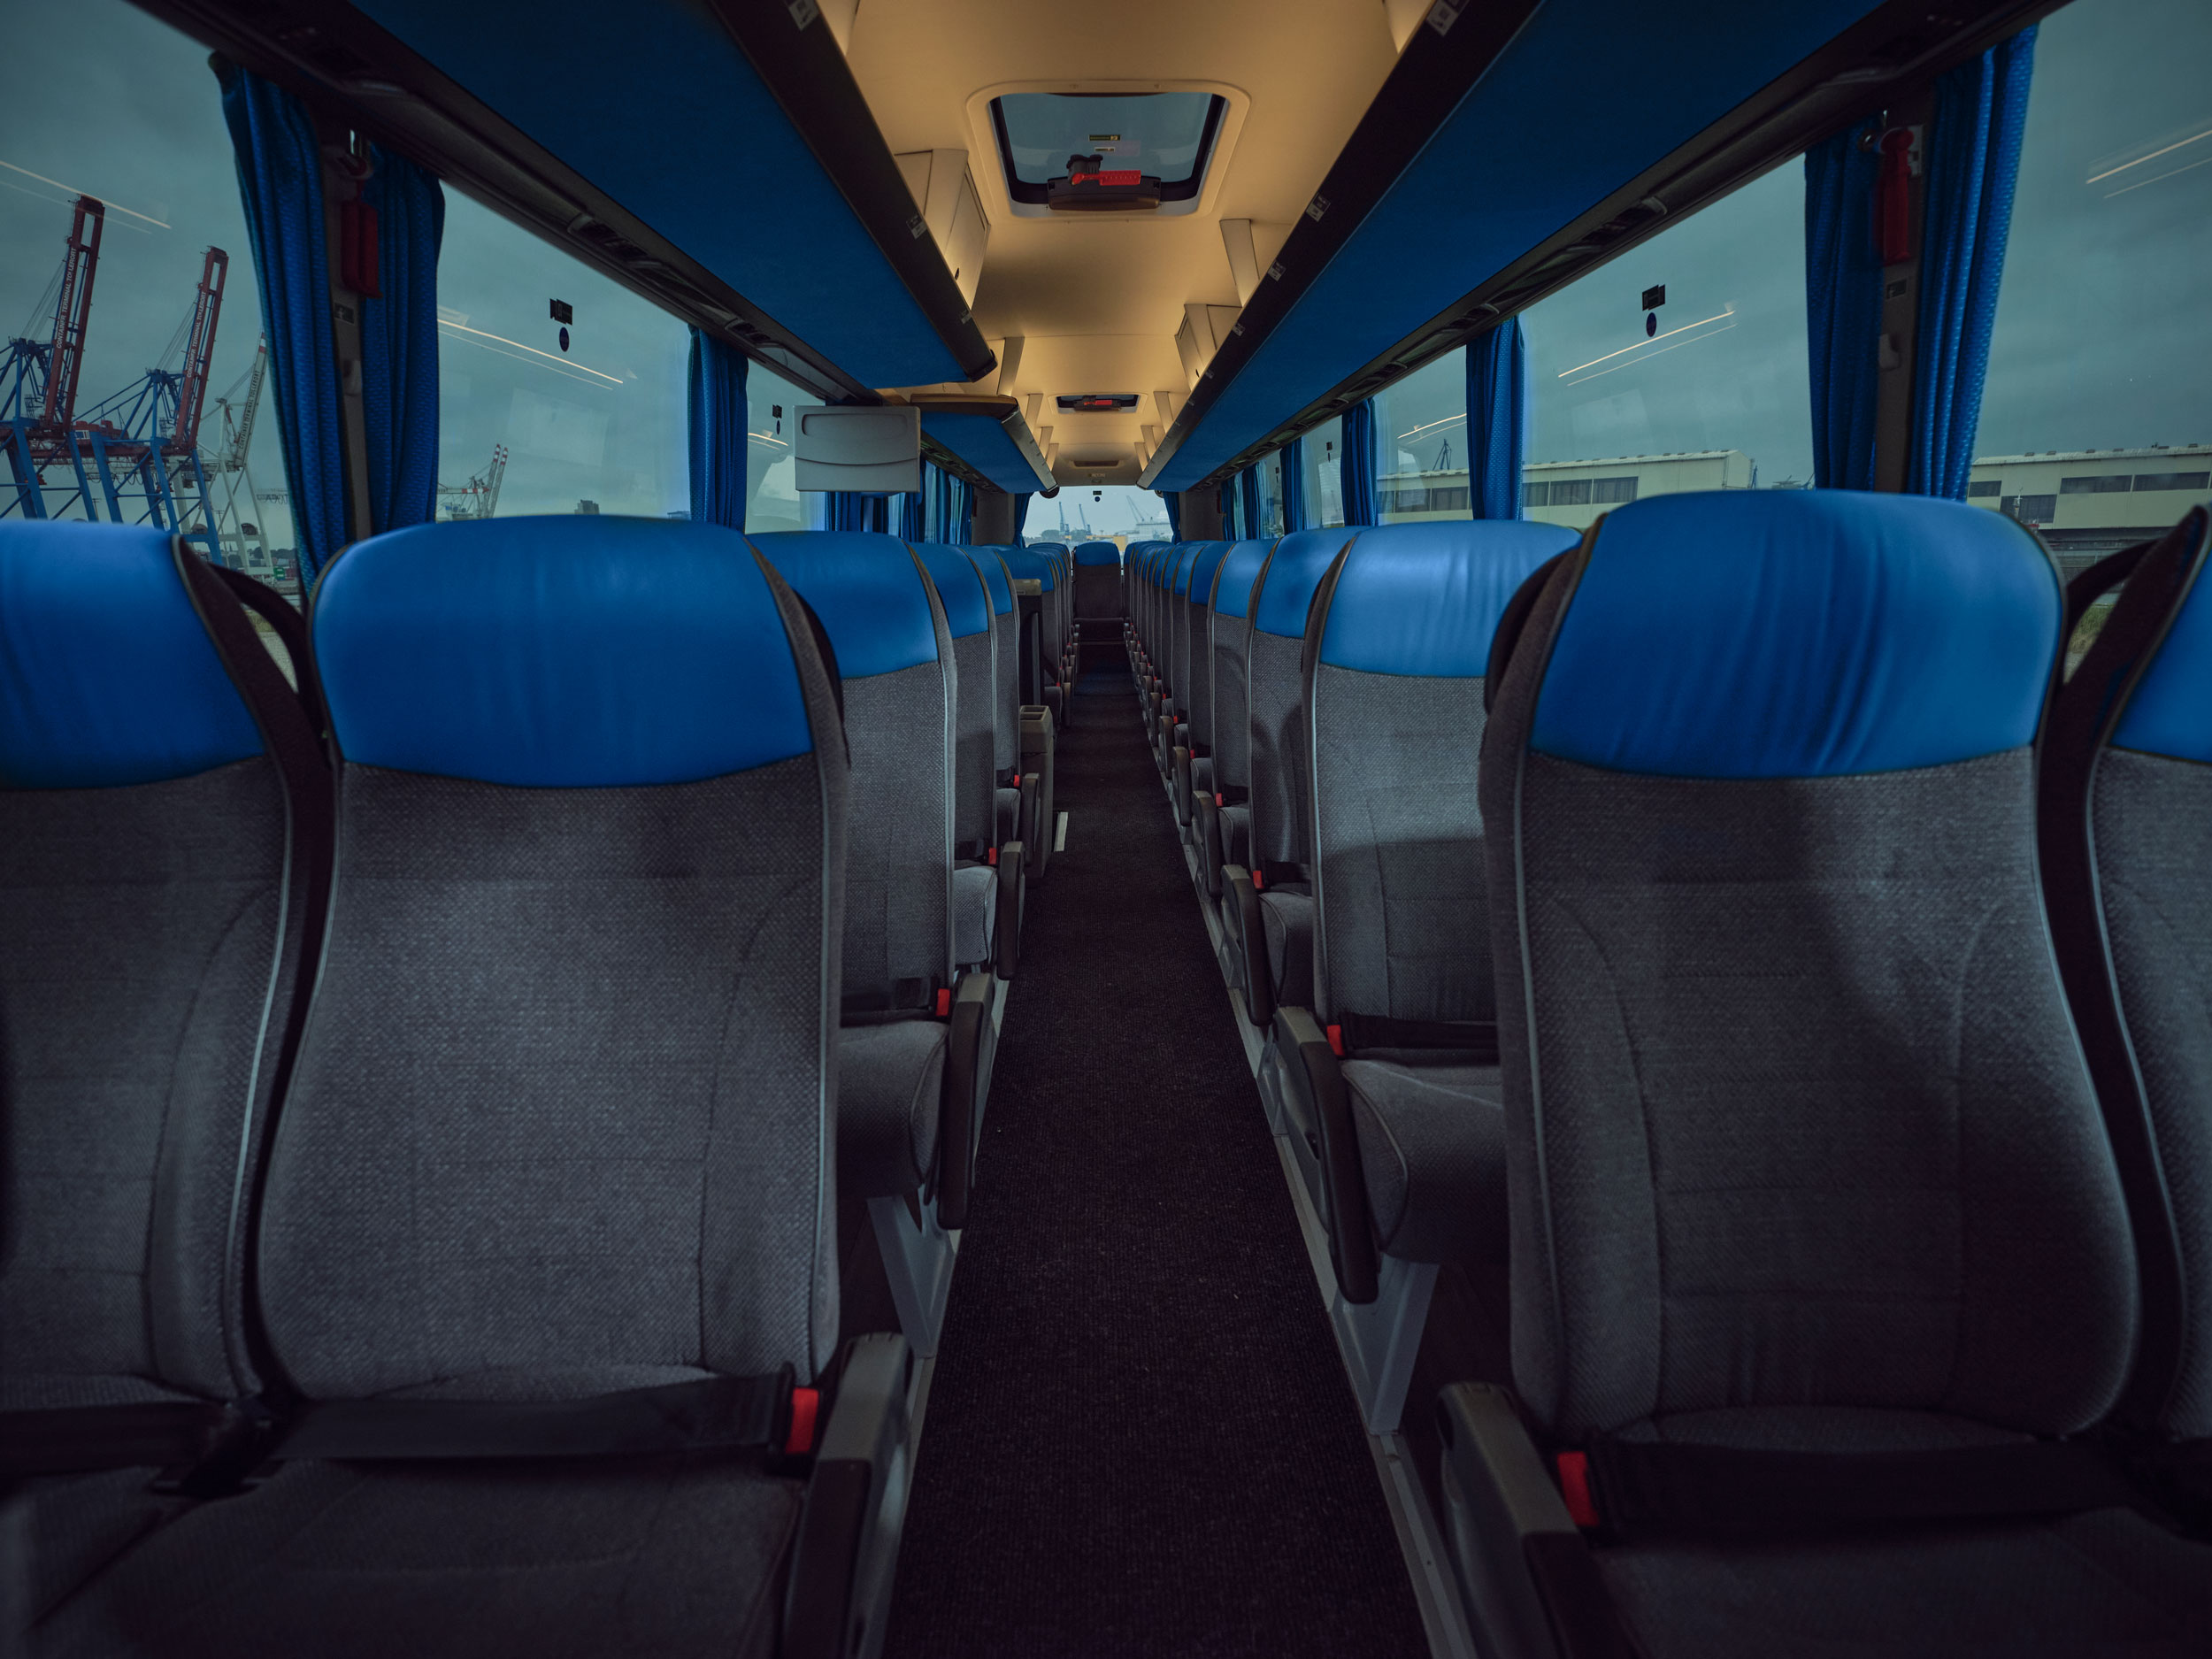 Interior of a coach